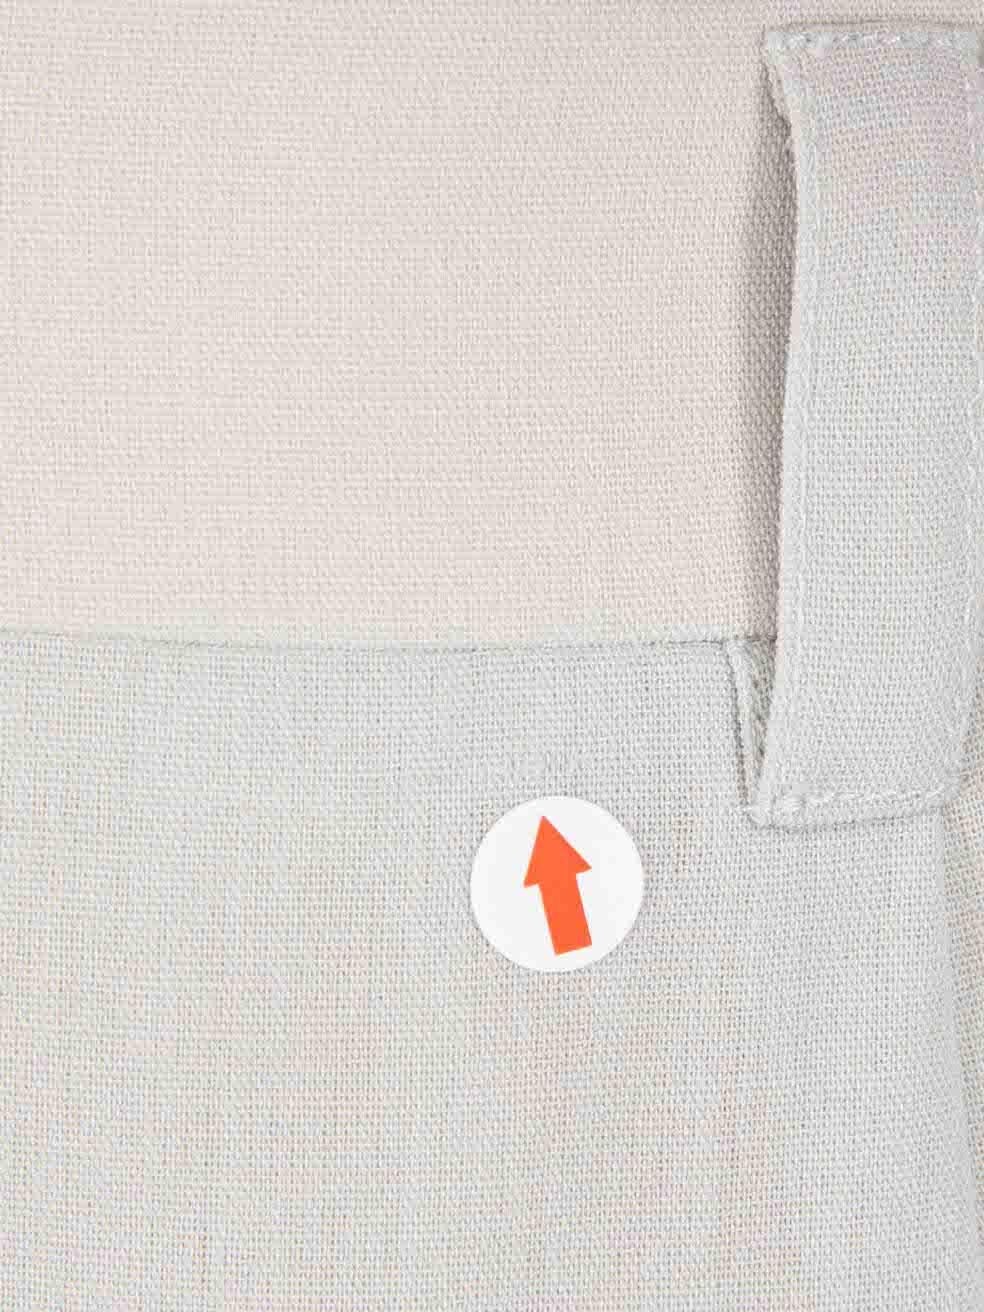 Jil Sander - Ensemble blazer et jupe gris assorti, taille M Pour femmes en vente